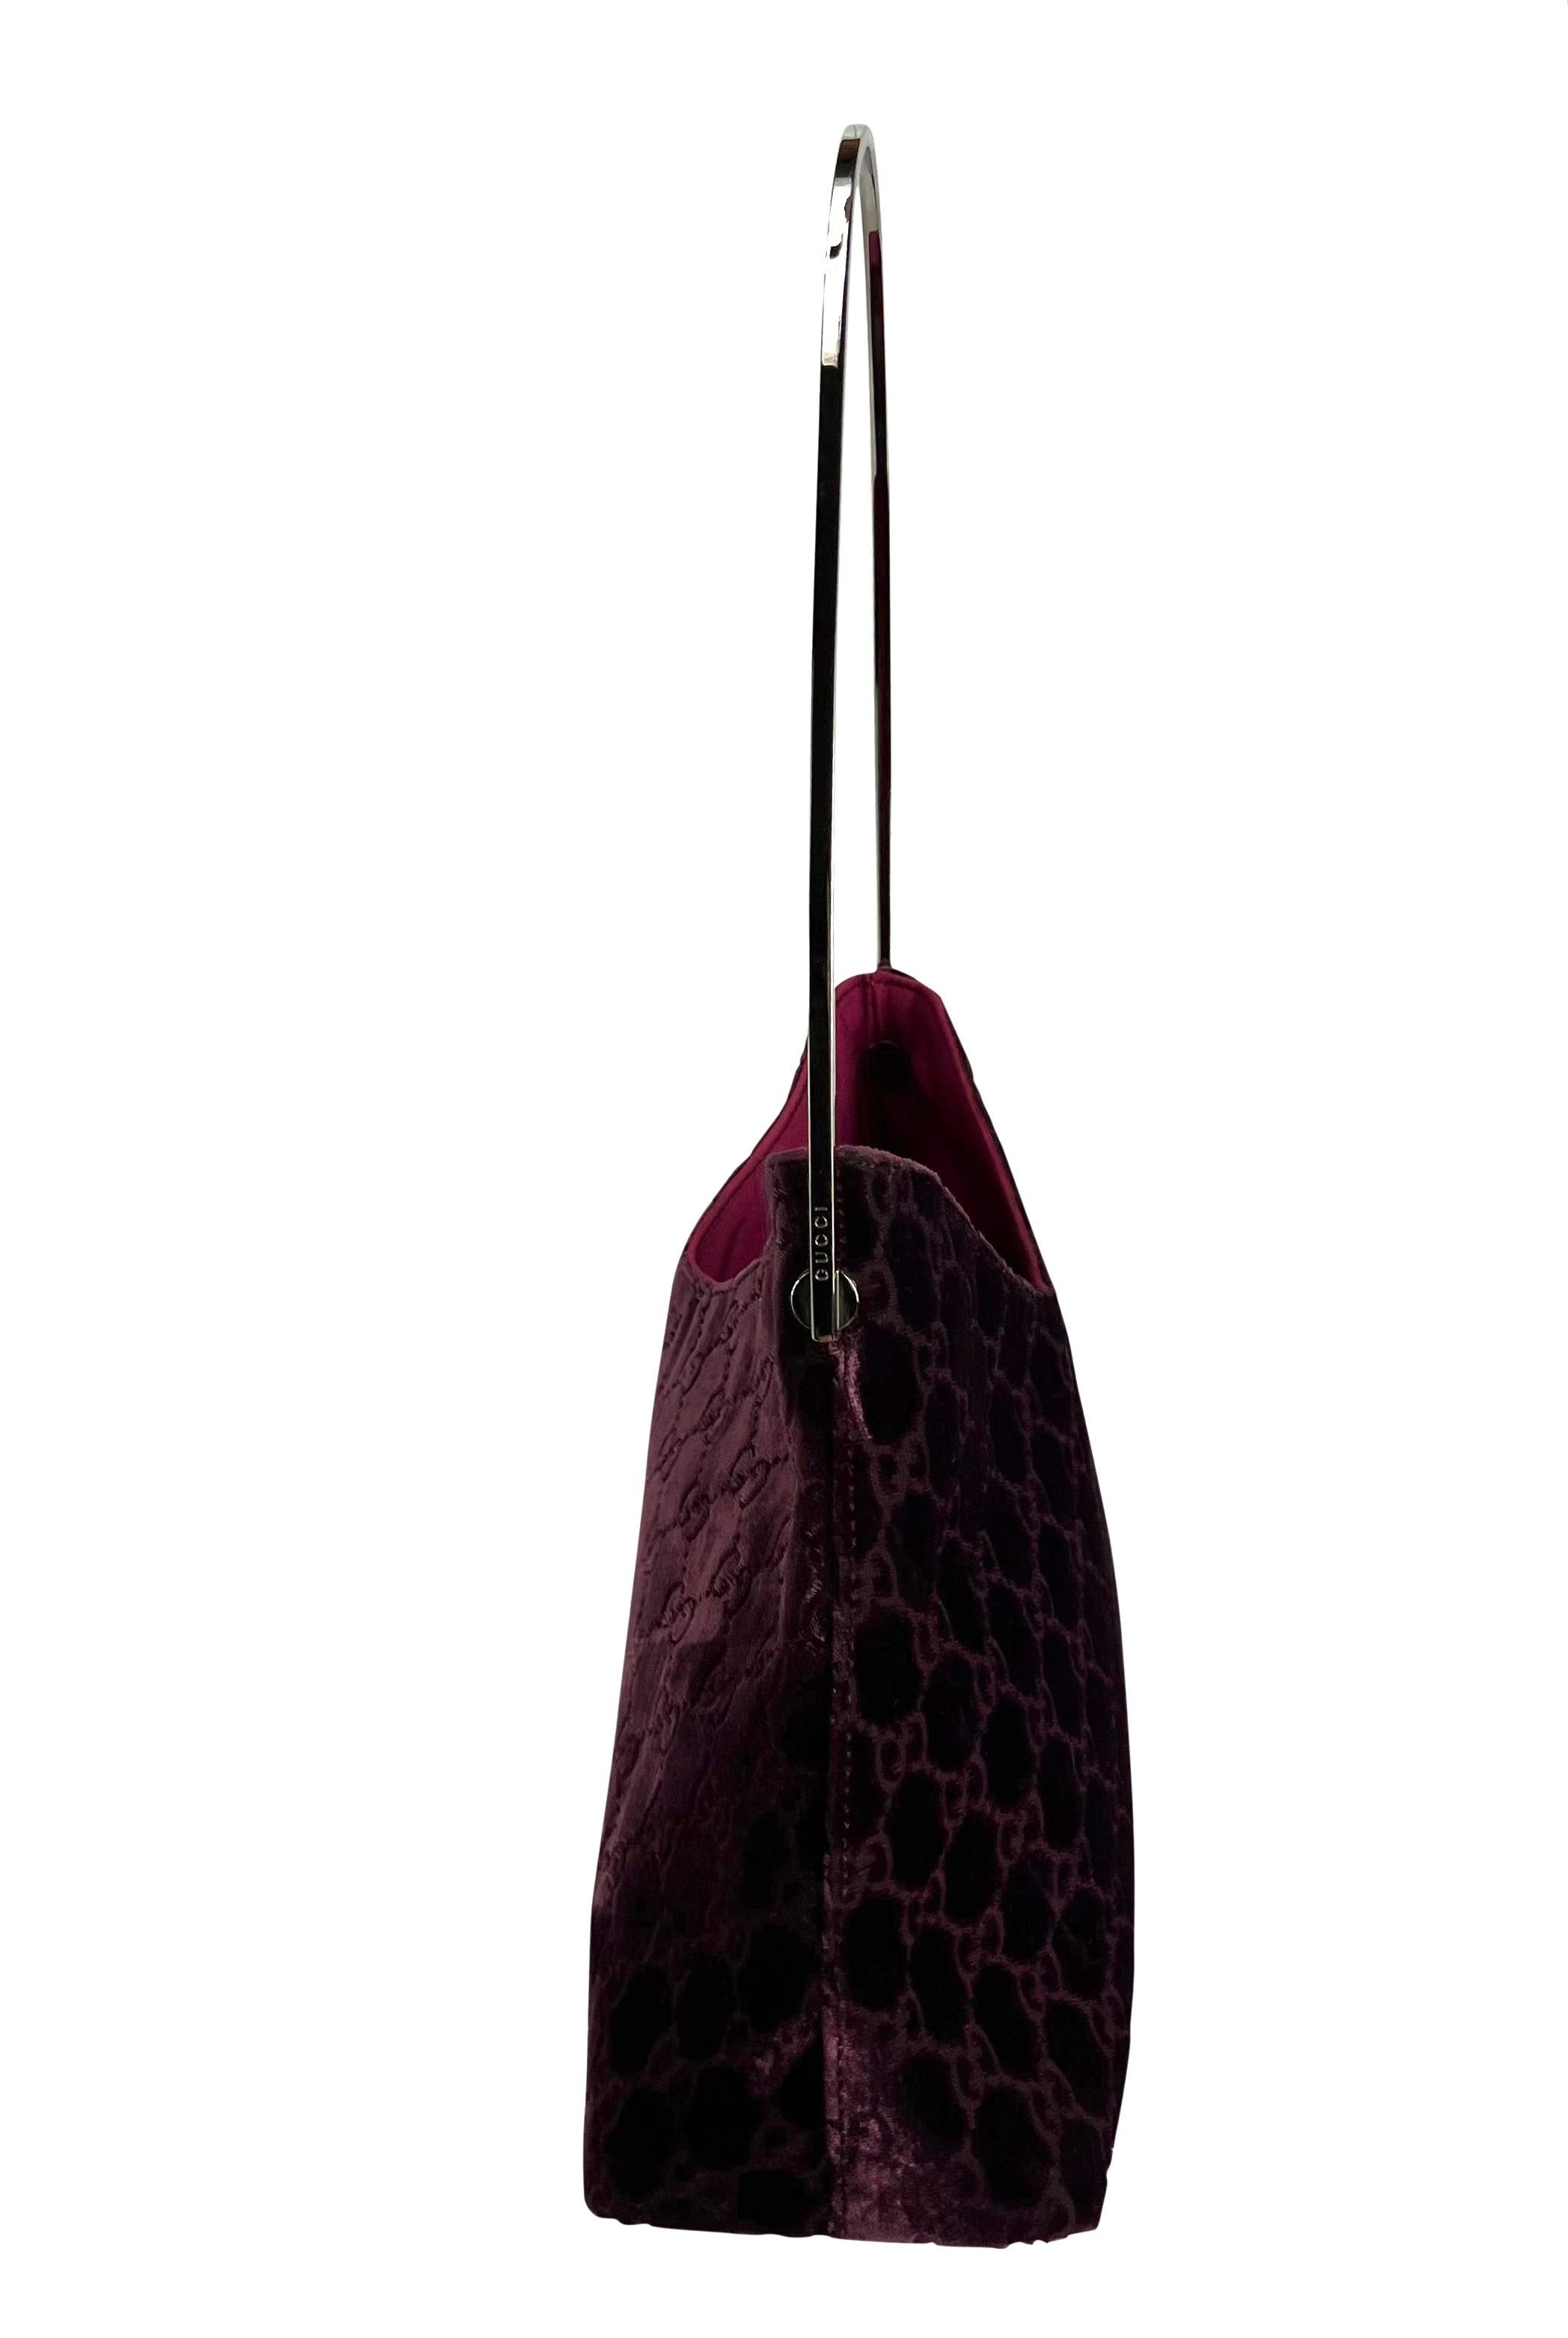 Ce sac seau à monogramme Gucci 'GG' bordeaux, conçu par Tom Ford, est un modèle emblématique. Issu de la collection automne/hiver 1997, ce fabuleux sac est constitué d'un corps en velours de soie violet foncé/bordeaux et d'une poignée argentée. Le